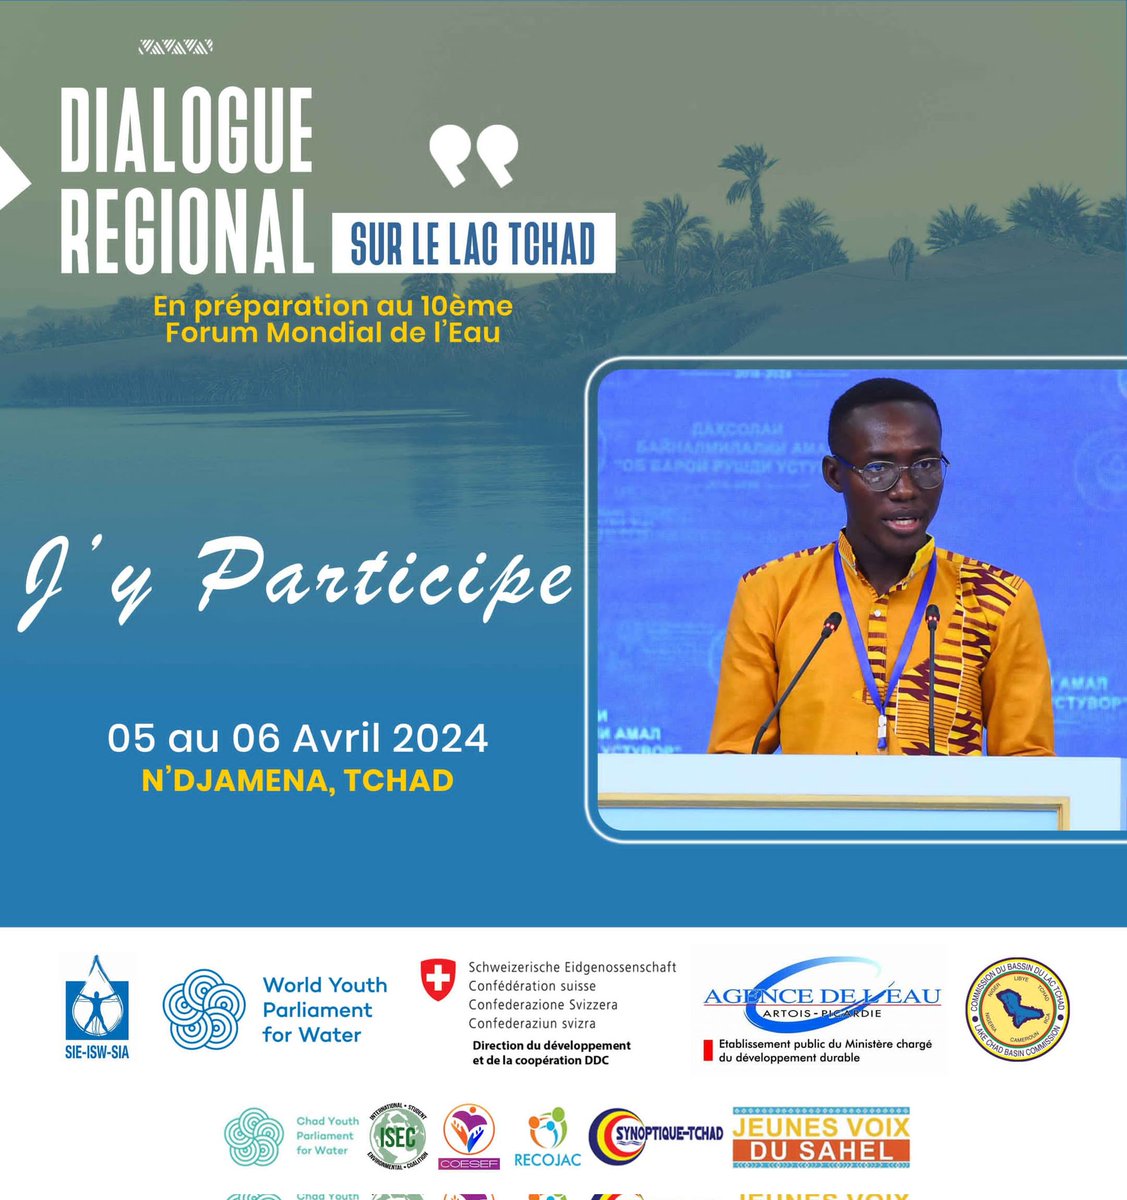 𝘿𝙞𝙖𝙡𝙤𝙜𝙪𝙚 𝙧é𝙜𝙞𝙤𝙣𝙖𝙡 𝙨𝙪𝙧 𝙡𝙚 𝙇𝙖𝙘-𝙏𝙘𝙝𝙖𝙙

Les Jeunes Voix du Sahel prendront part à cet important événement sur le Lac Tchad du 5 au 6 Avril organisé par le @ParlementEau